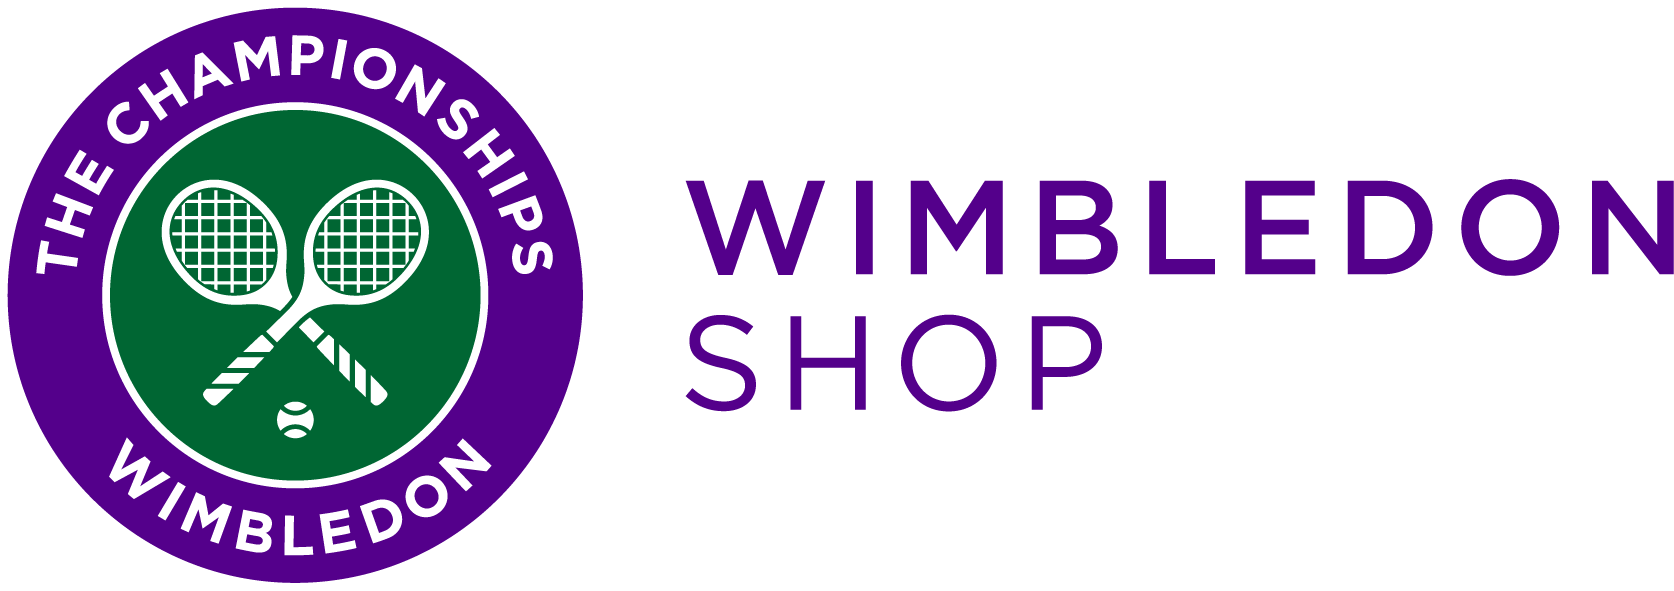 wimbledon tennis online shop